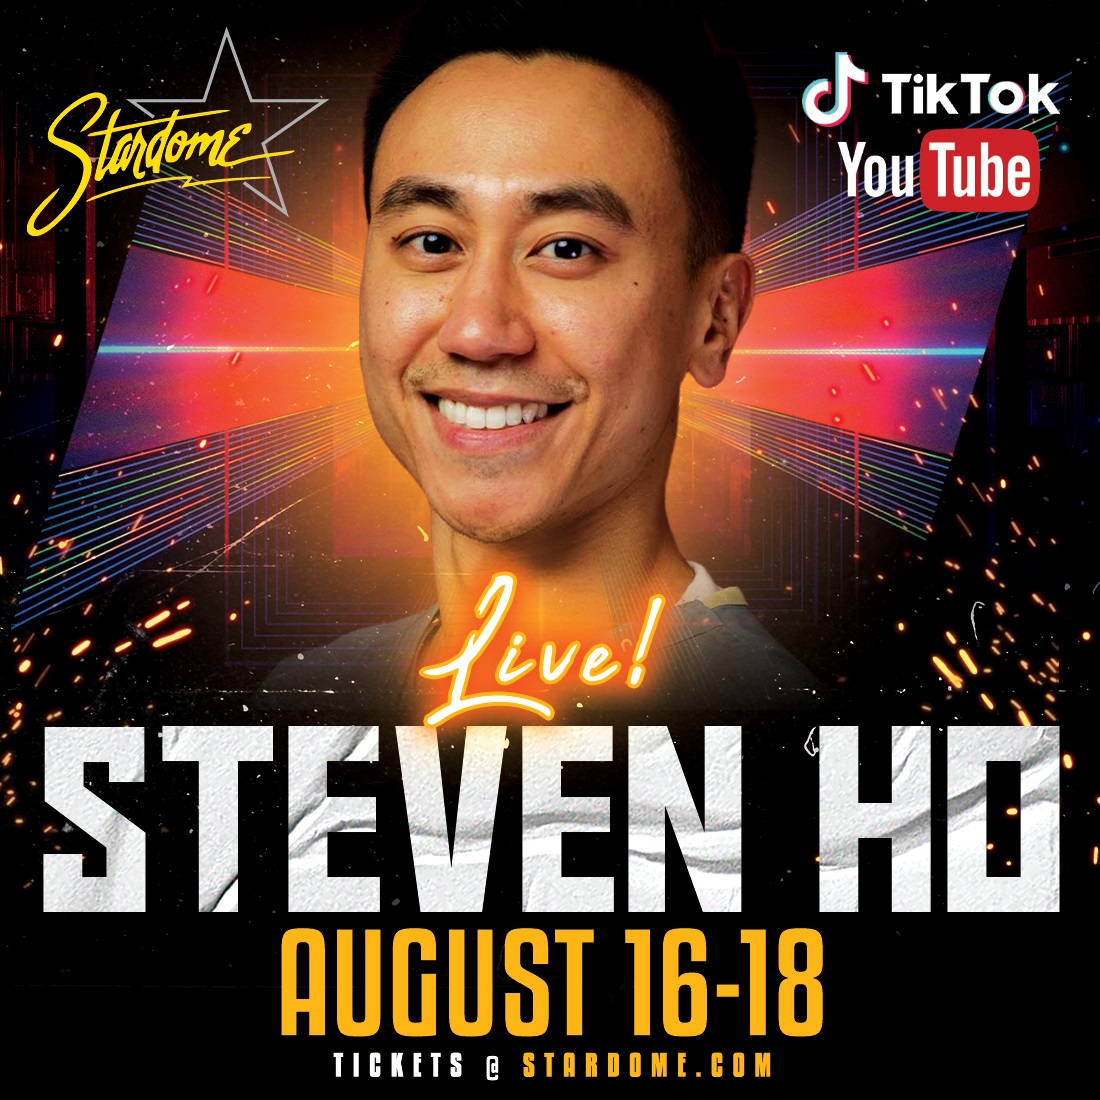 Steven Ho